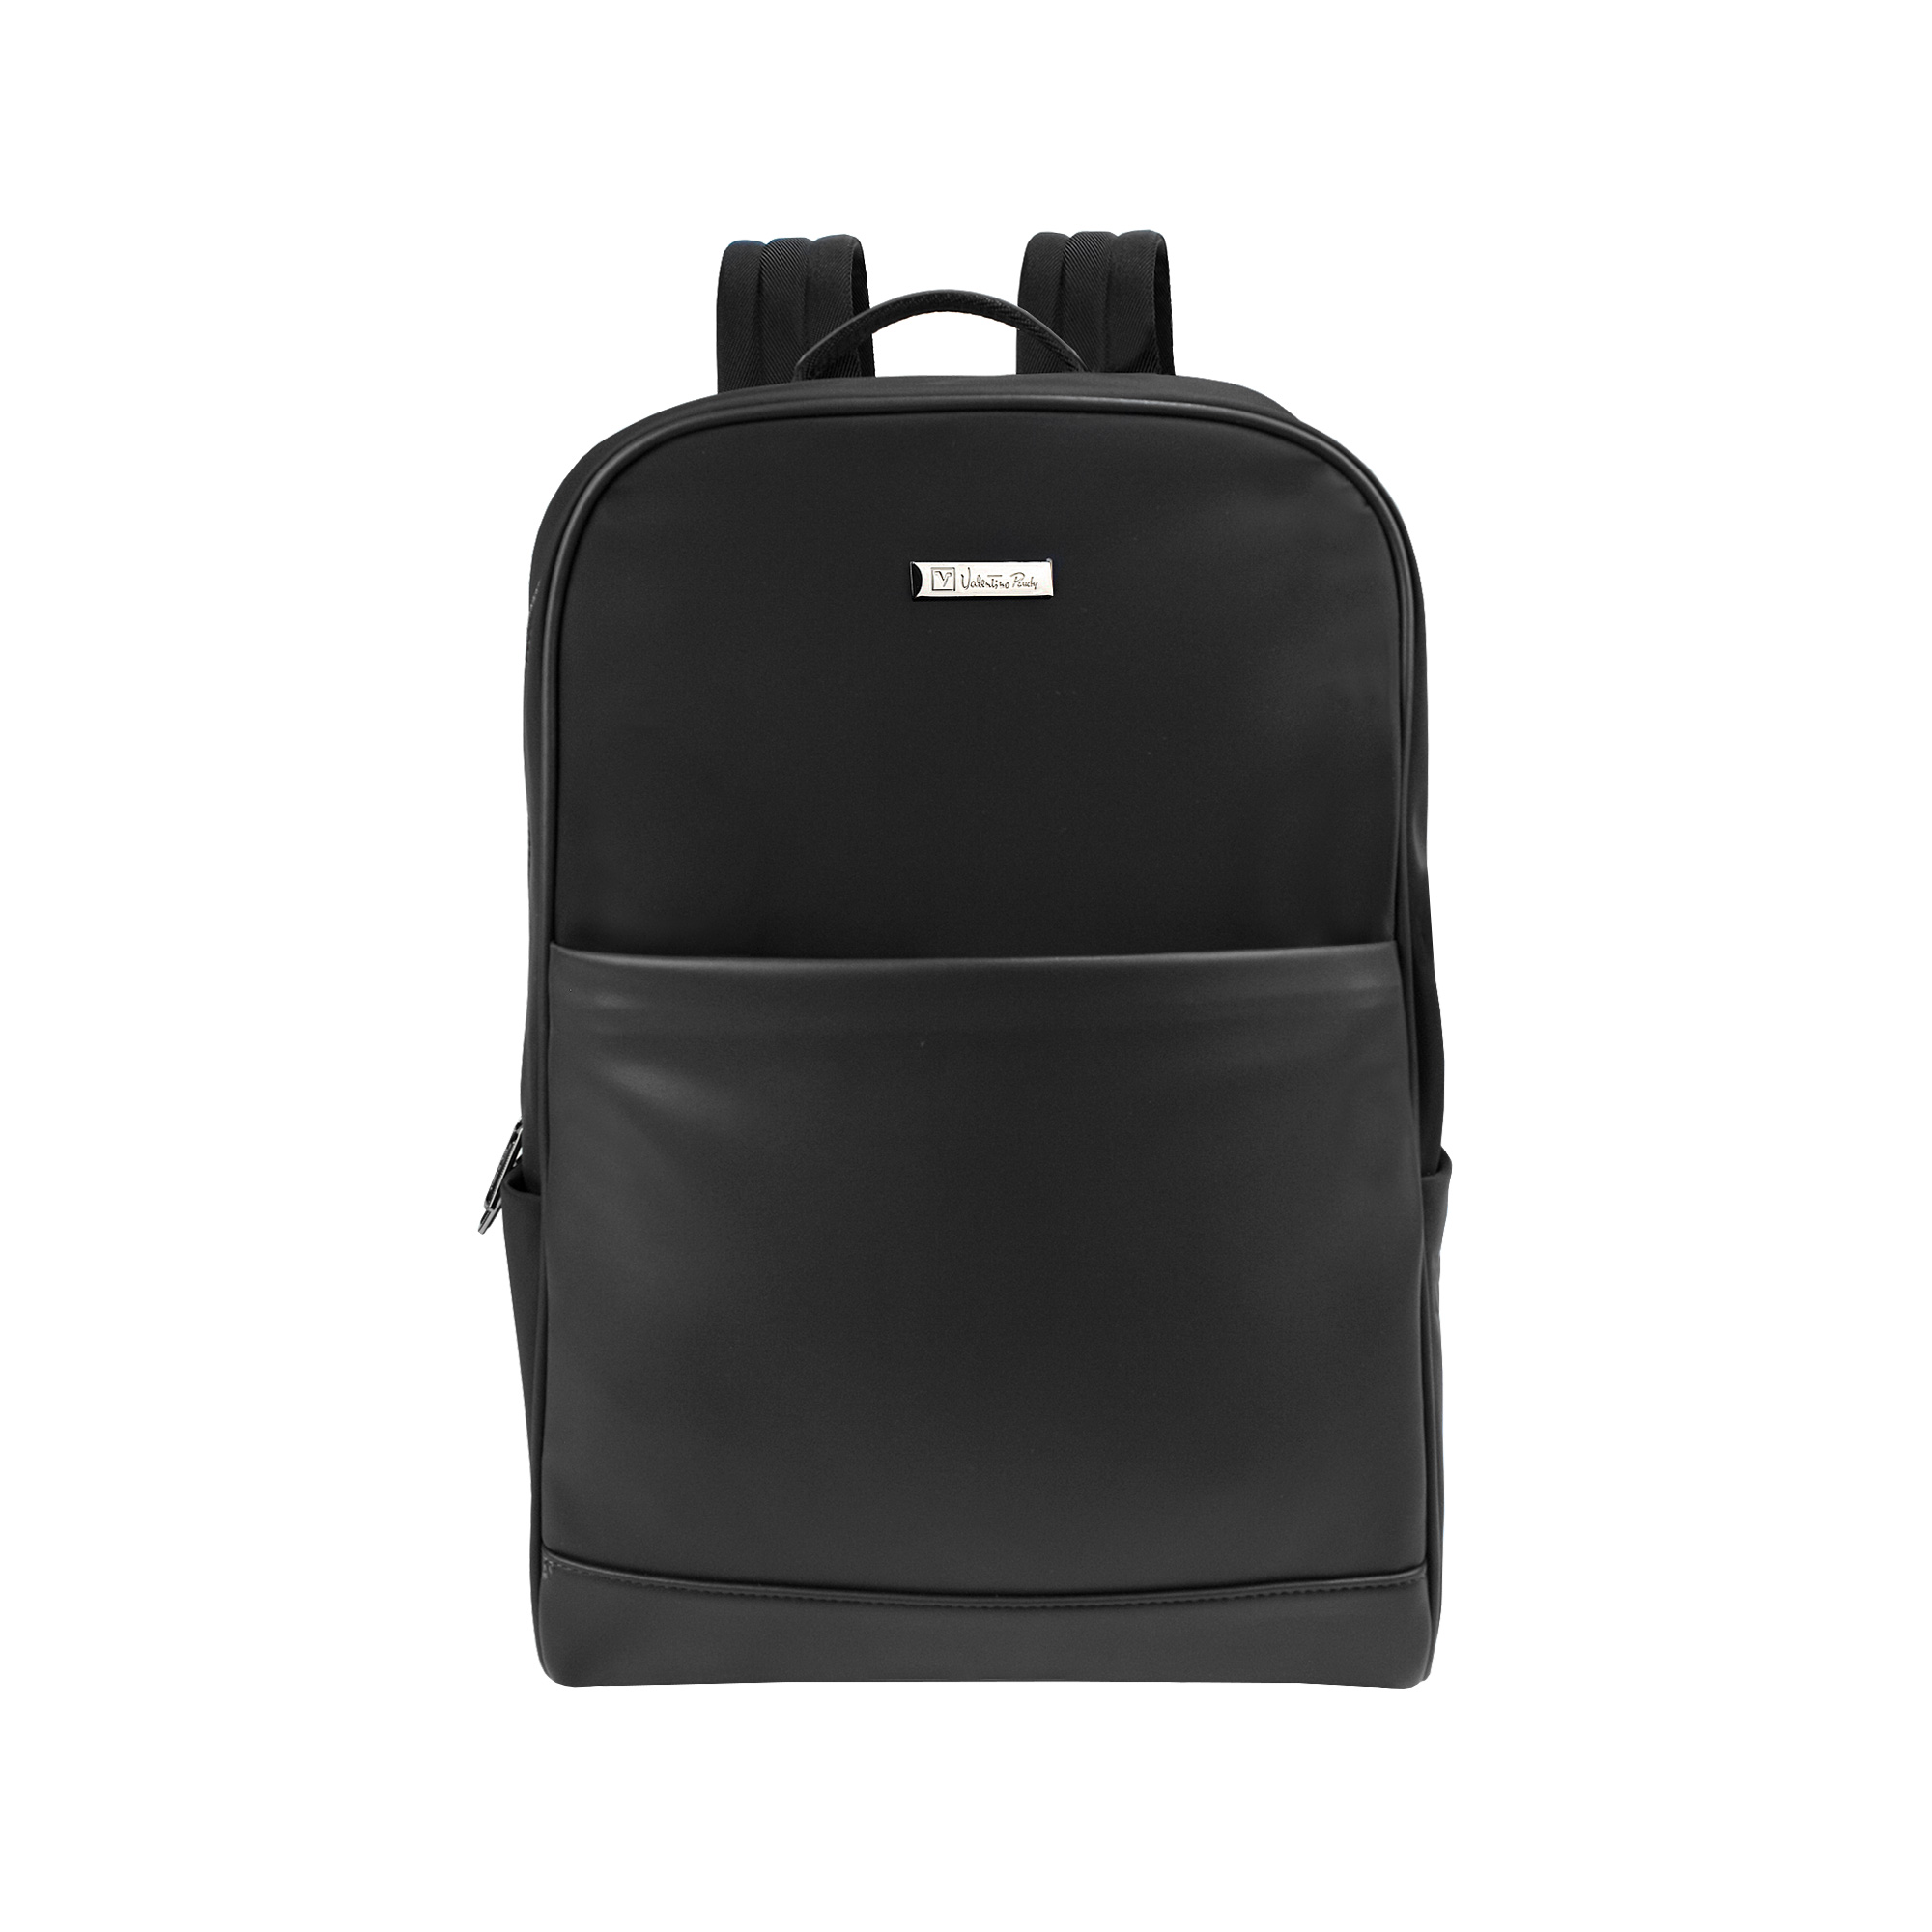 Valentino Rudy Italy Men's Nylon Laptop Backpack 0462018-100 | Lazada